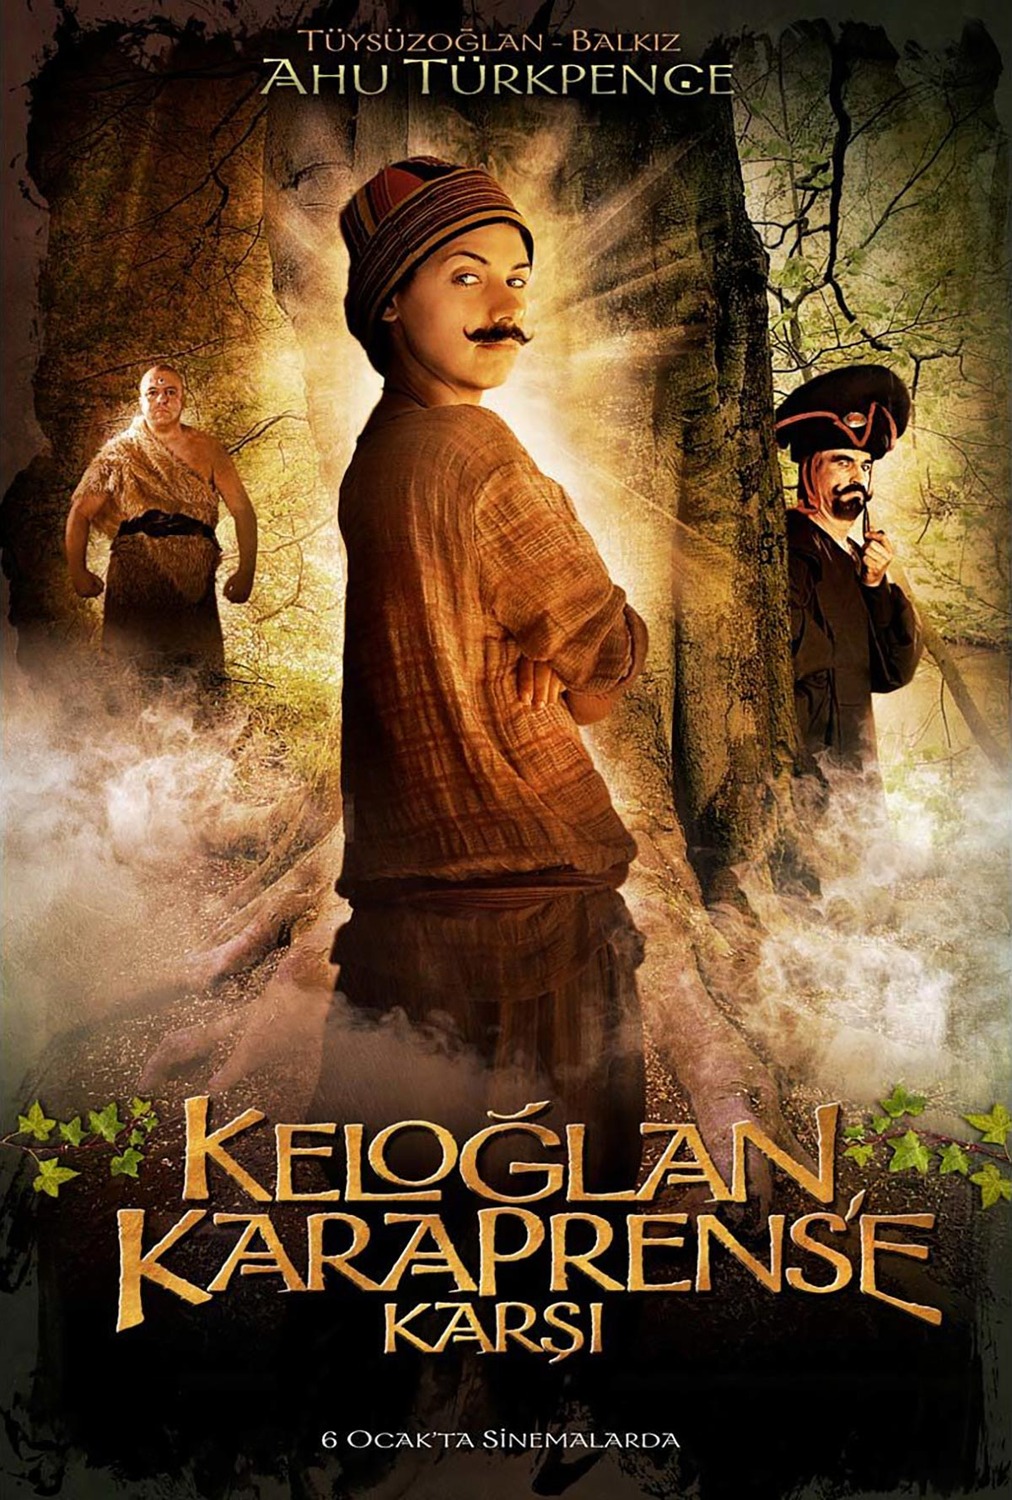 Extra Large Movie Poster Image for Keloglan Karaprens'e Karsi (#8 of 8)